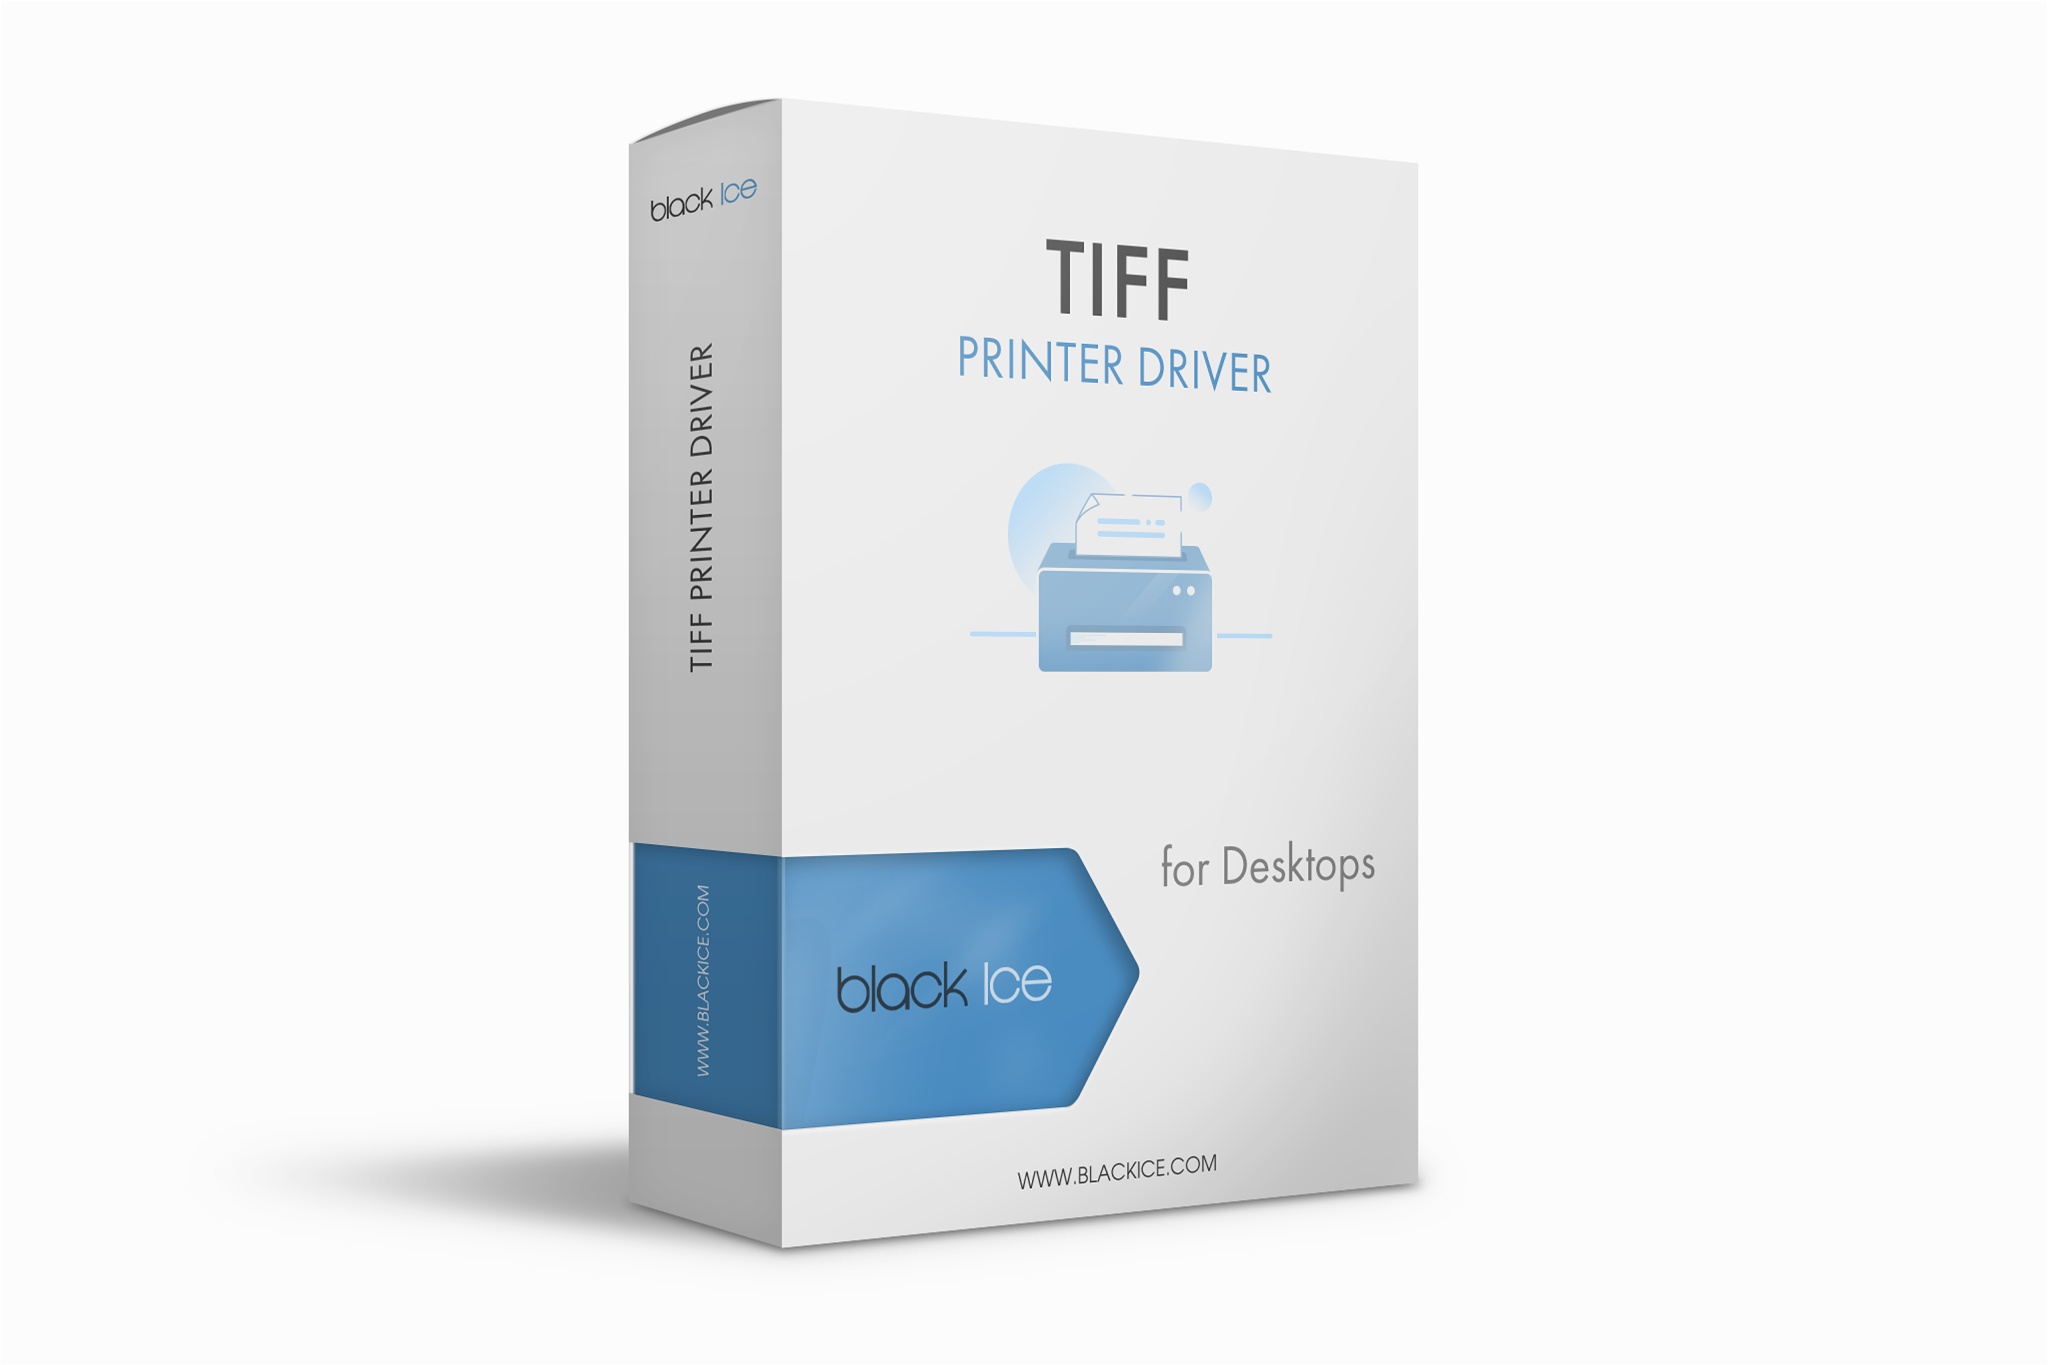 TIFF/Monochrome Printer Driver Subscription (100 Licenses)